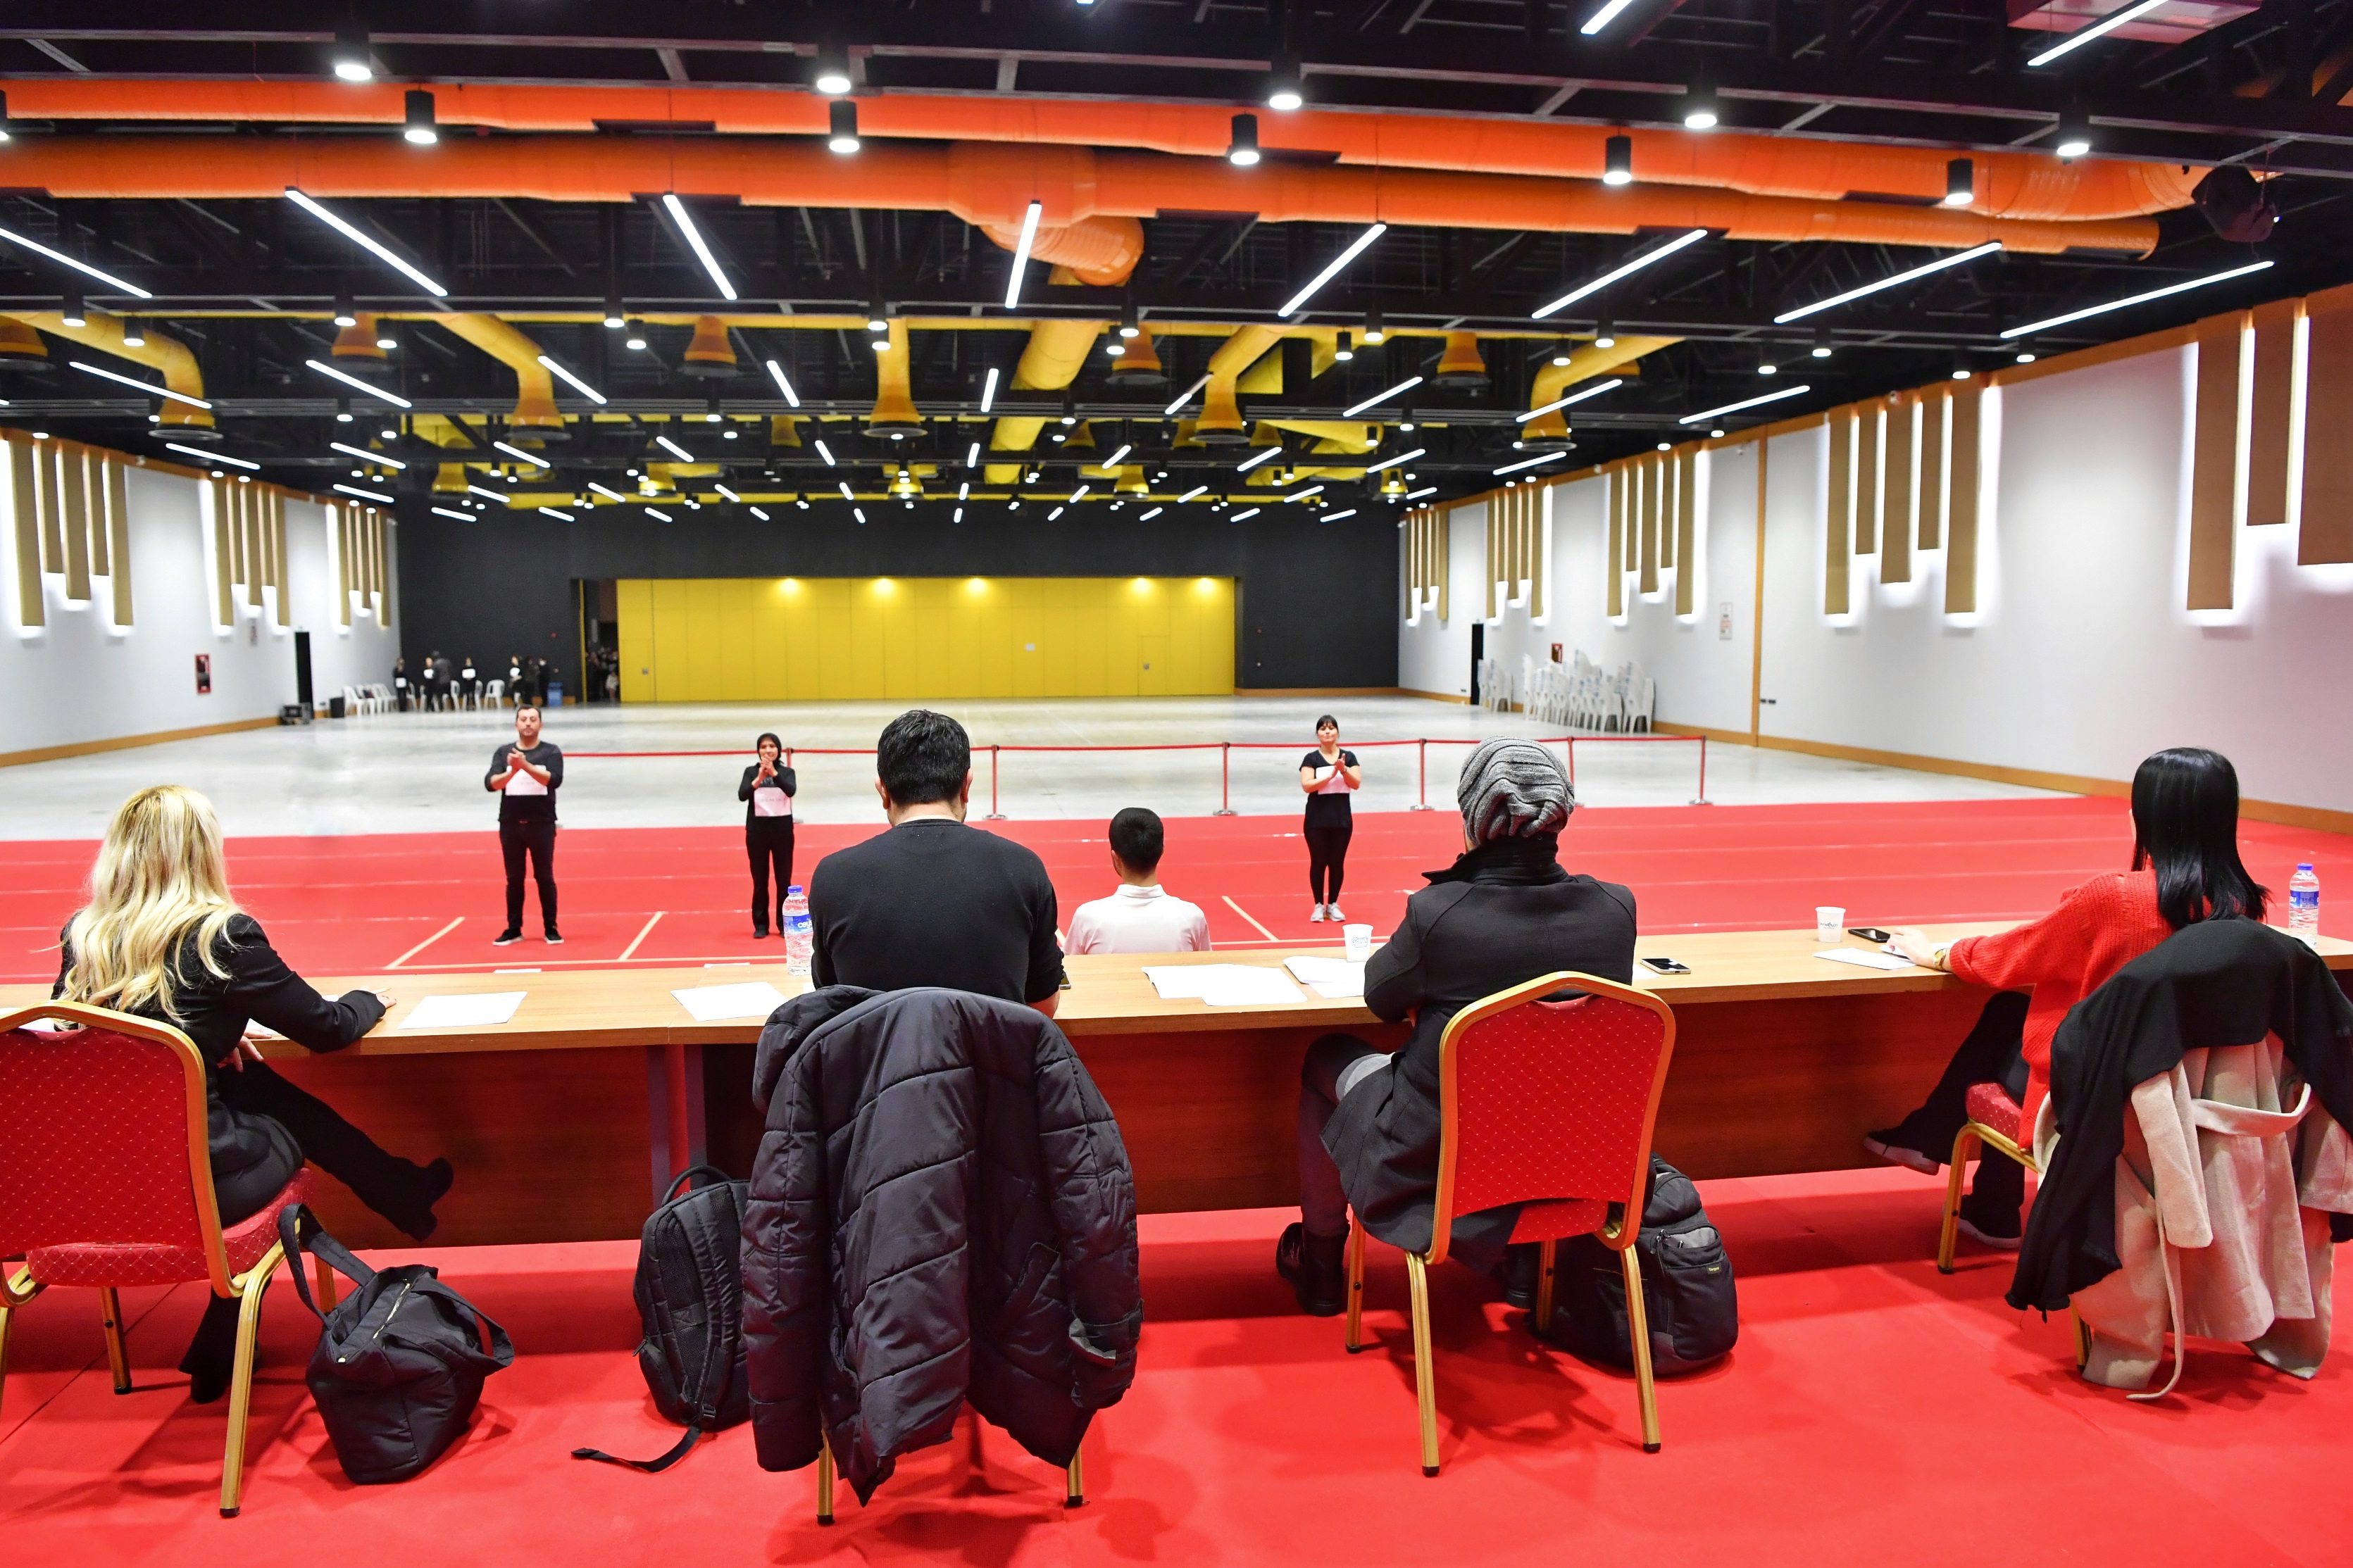 Konyaaltı Belediyesi Halk Oyunları Topluluğu, kadrosunu yeni üyeleriyle güçlendirdi.